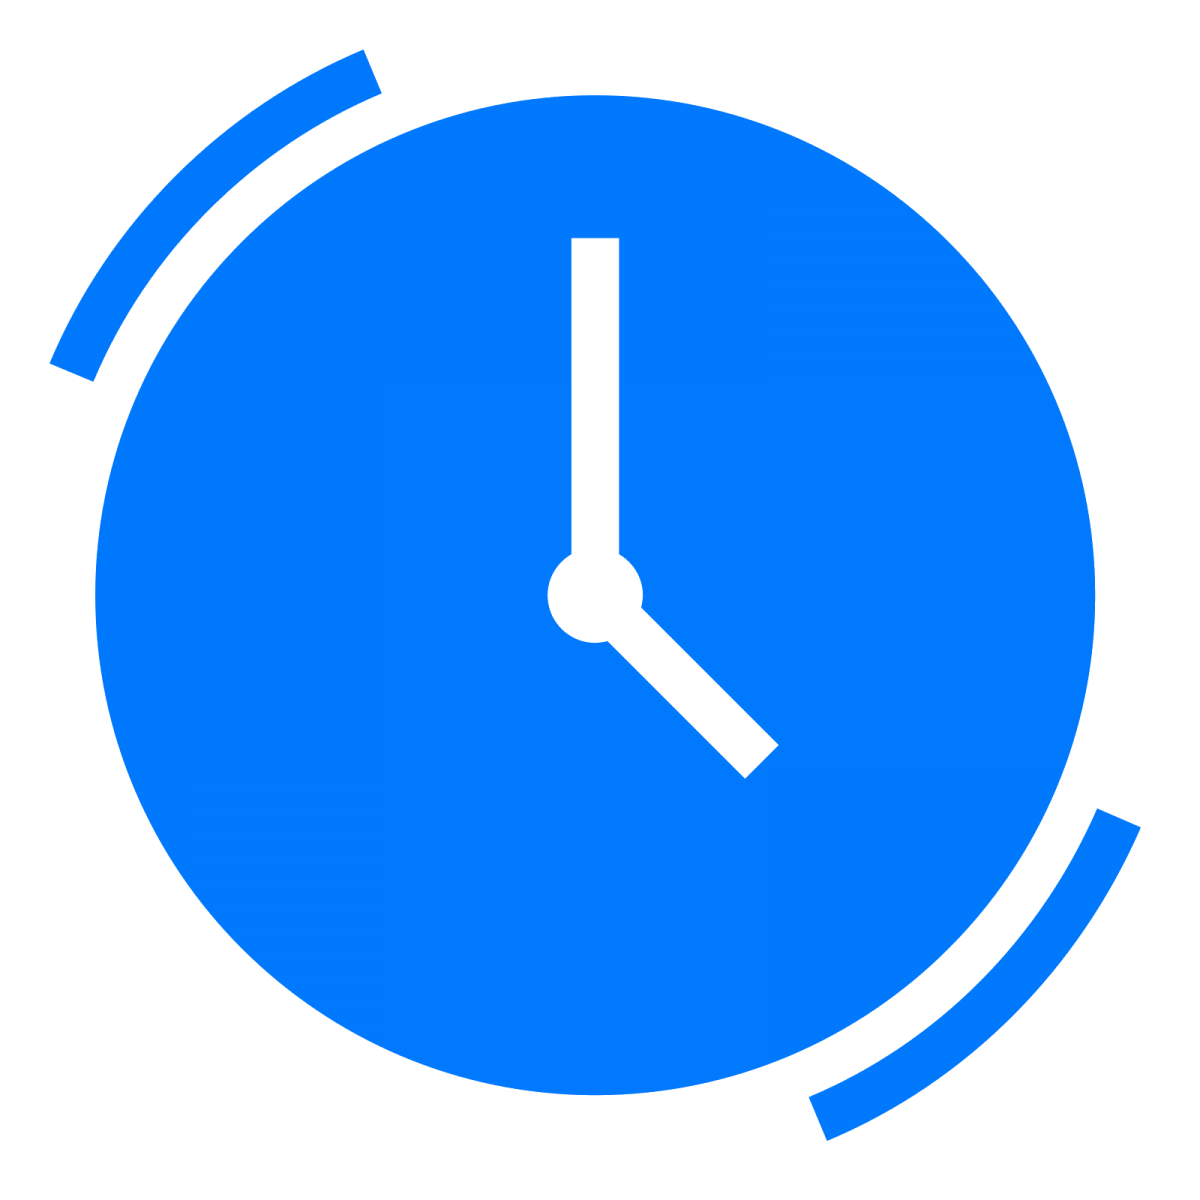 8.00 17.00. Значок часов. Часы пиктограмма. Иконка часов для режима работы. Часы значок синий.